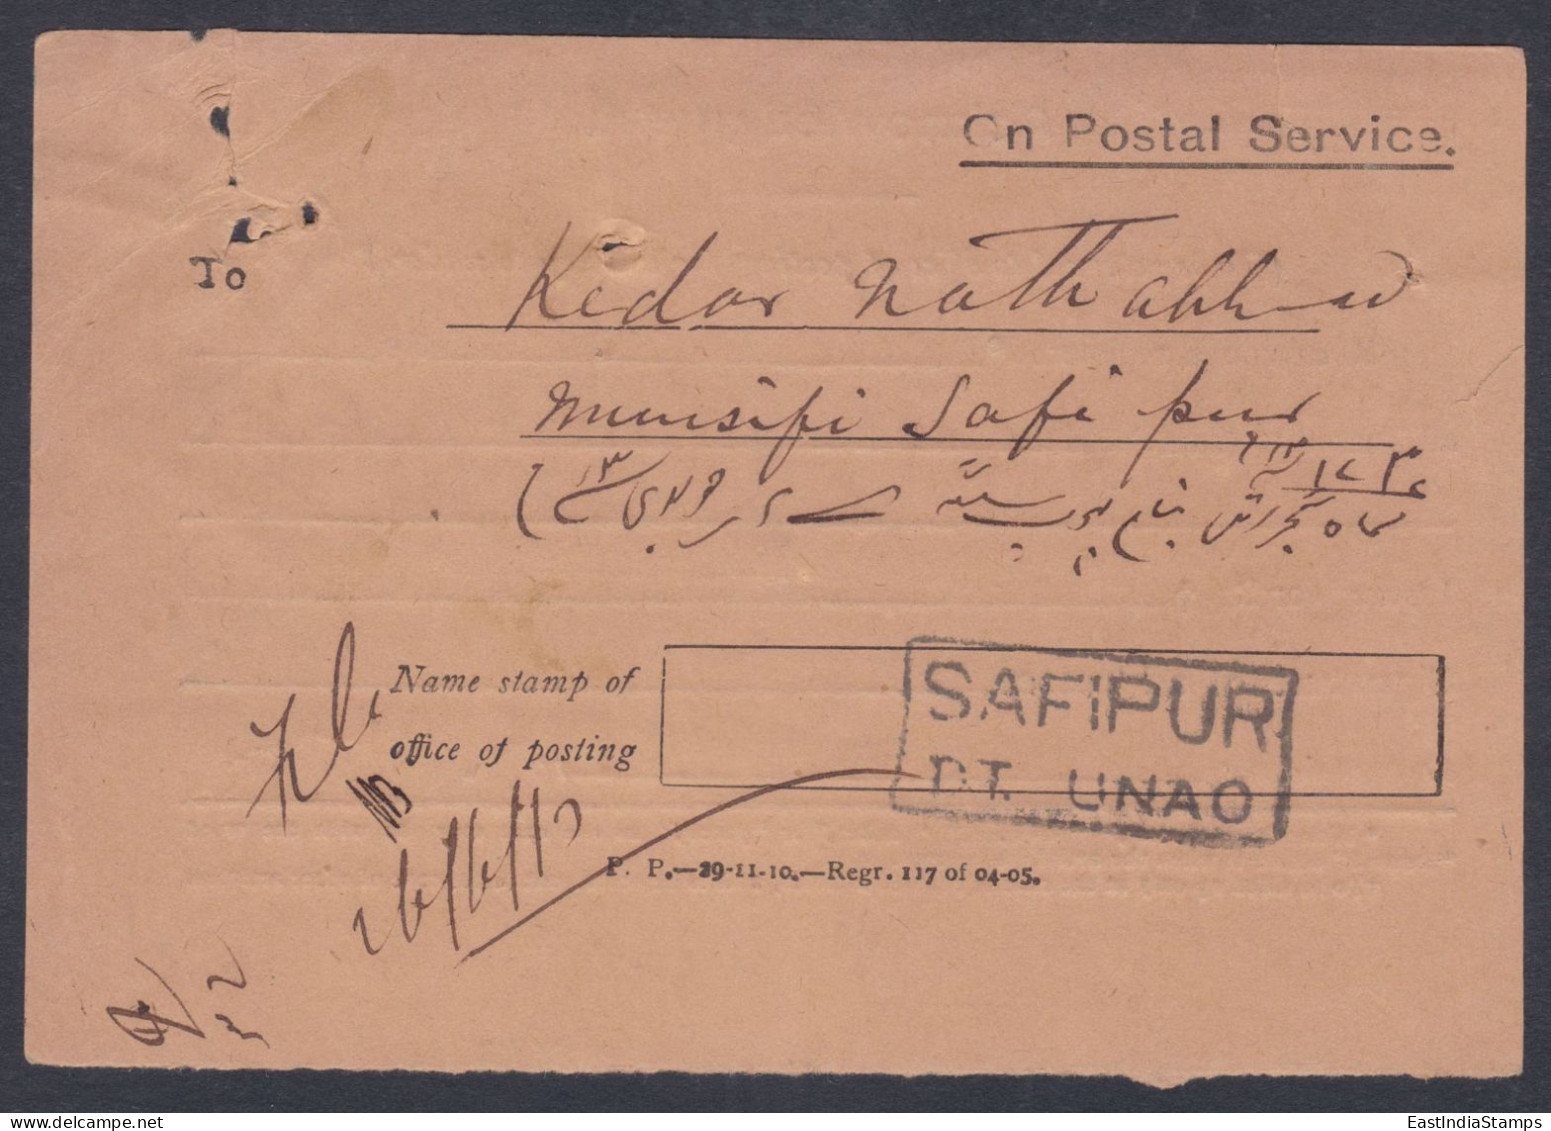 Inde British India 1913 Used Registered Cover, Civil Judge, Lucknow, King George V, Stamps, Return Mail, Acknowledgement - 1911-35 Koning George V